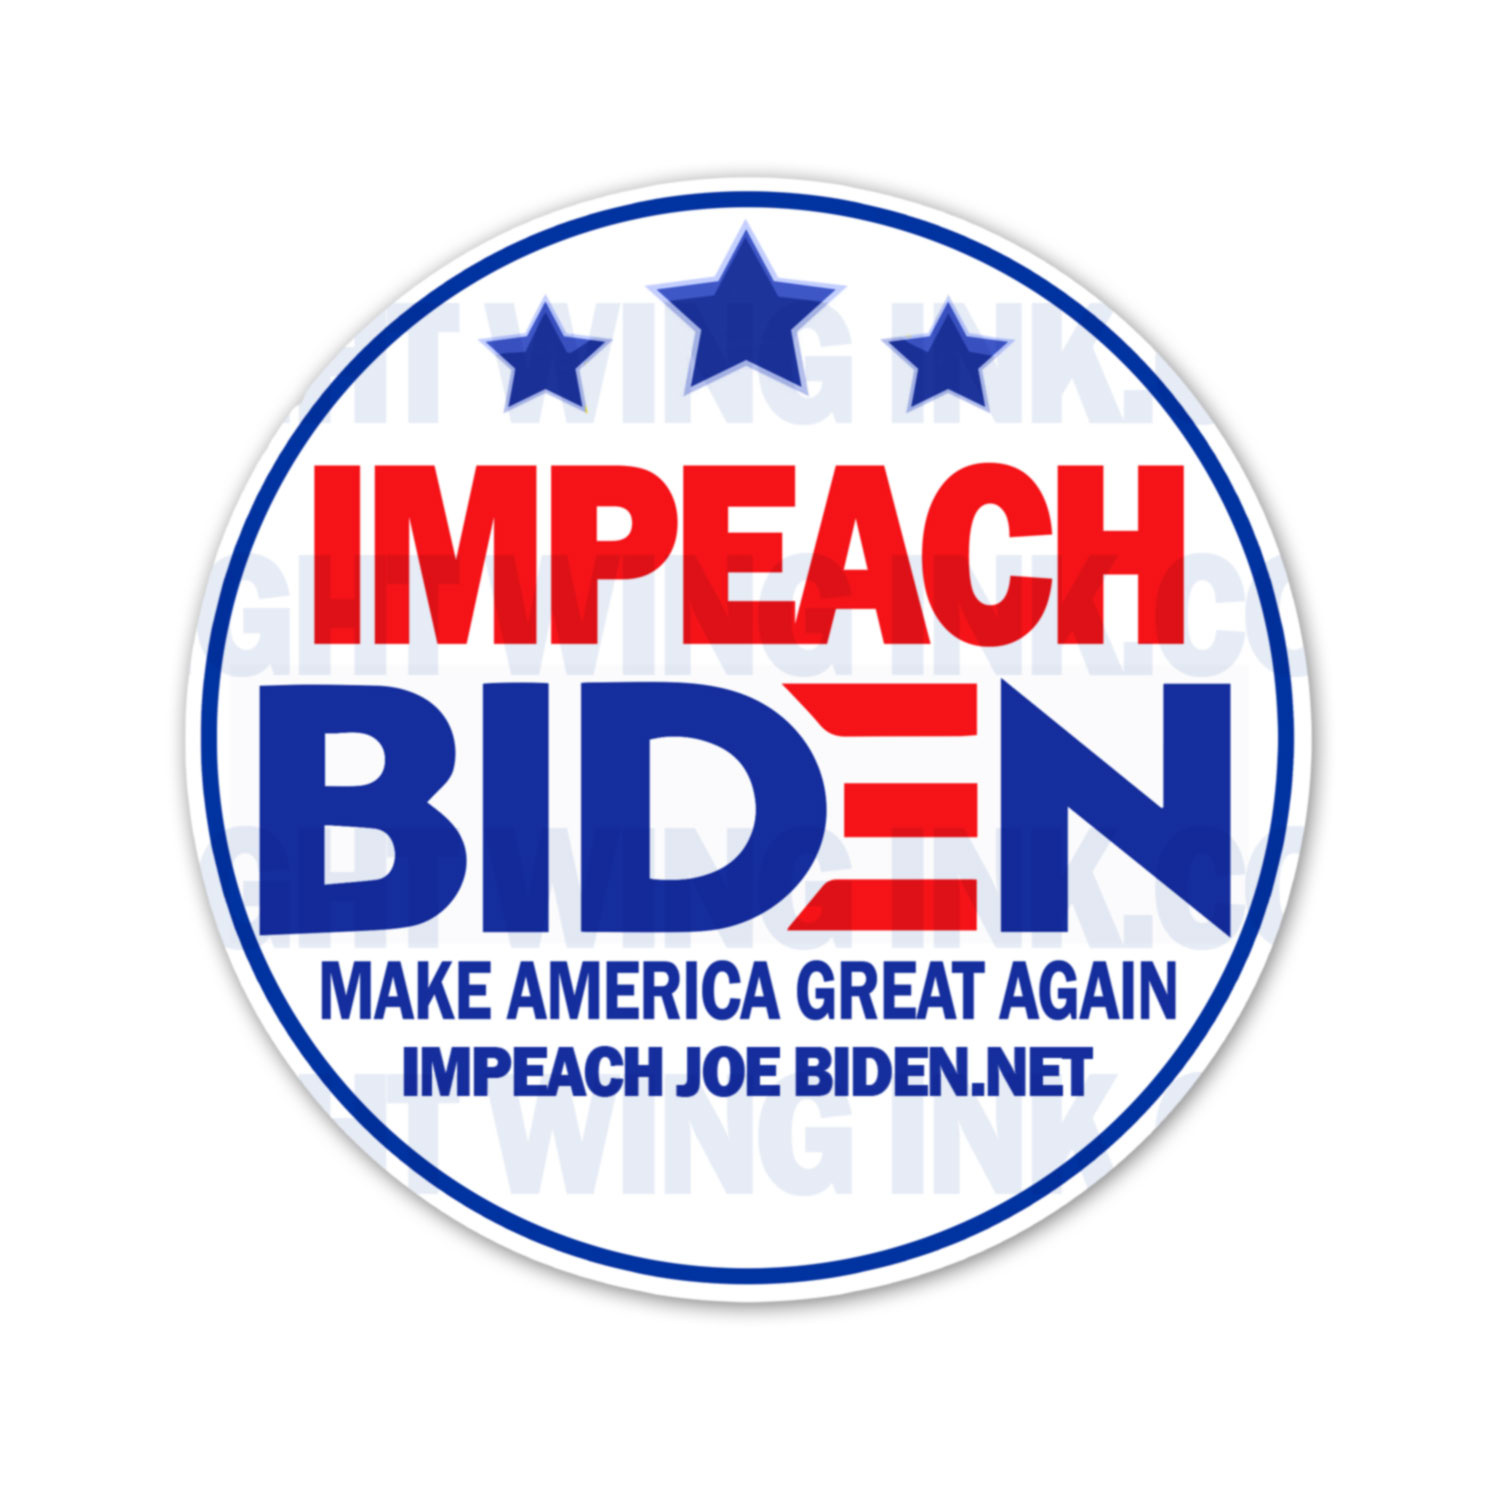 Impeach Joe Biden - Make America Great Again Stickers 2 Pack 1